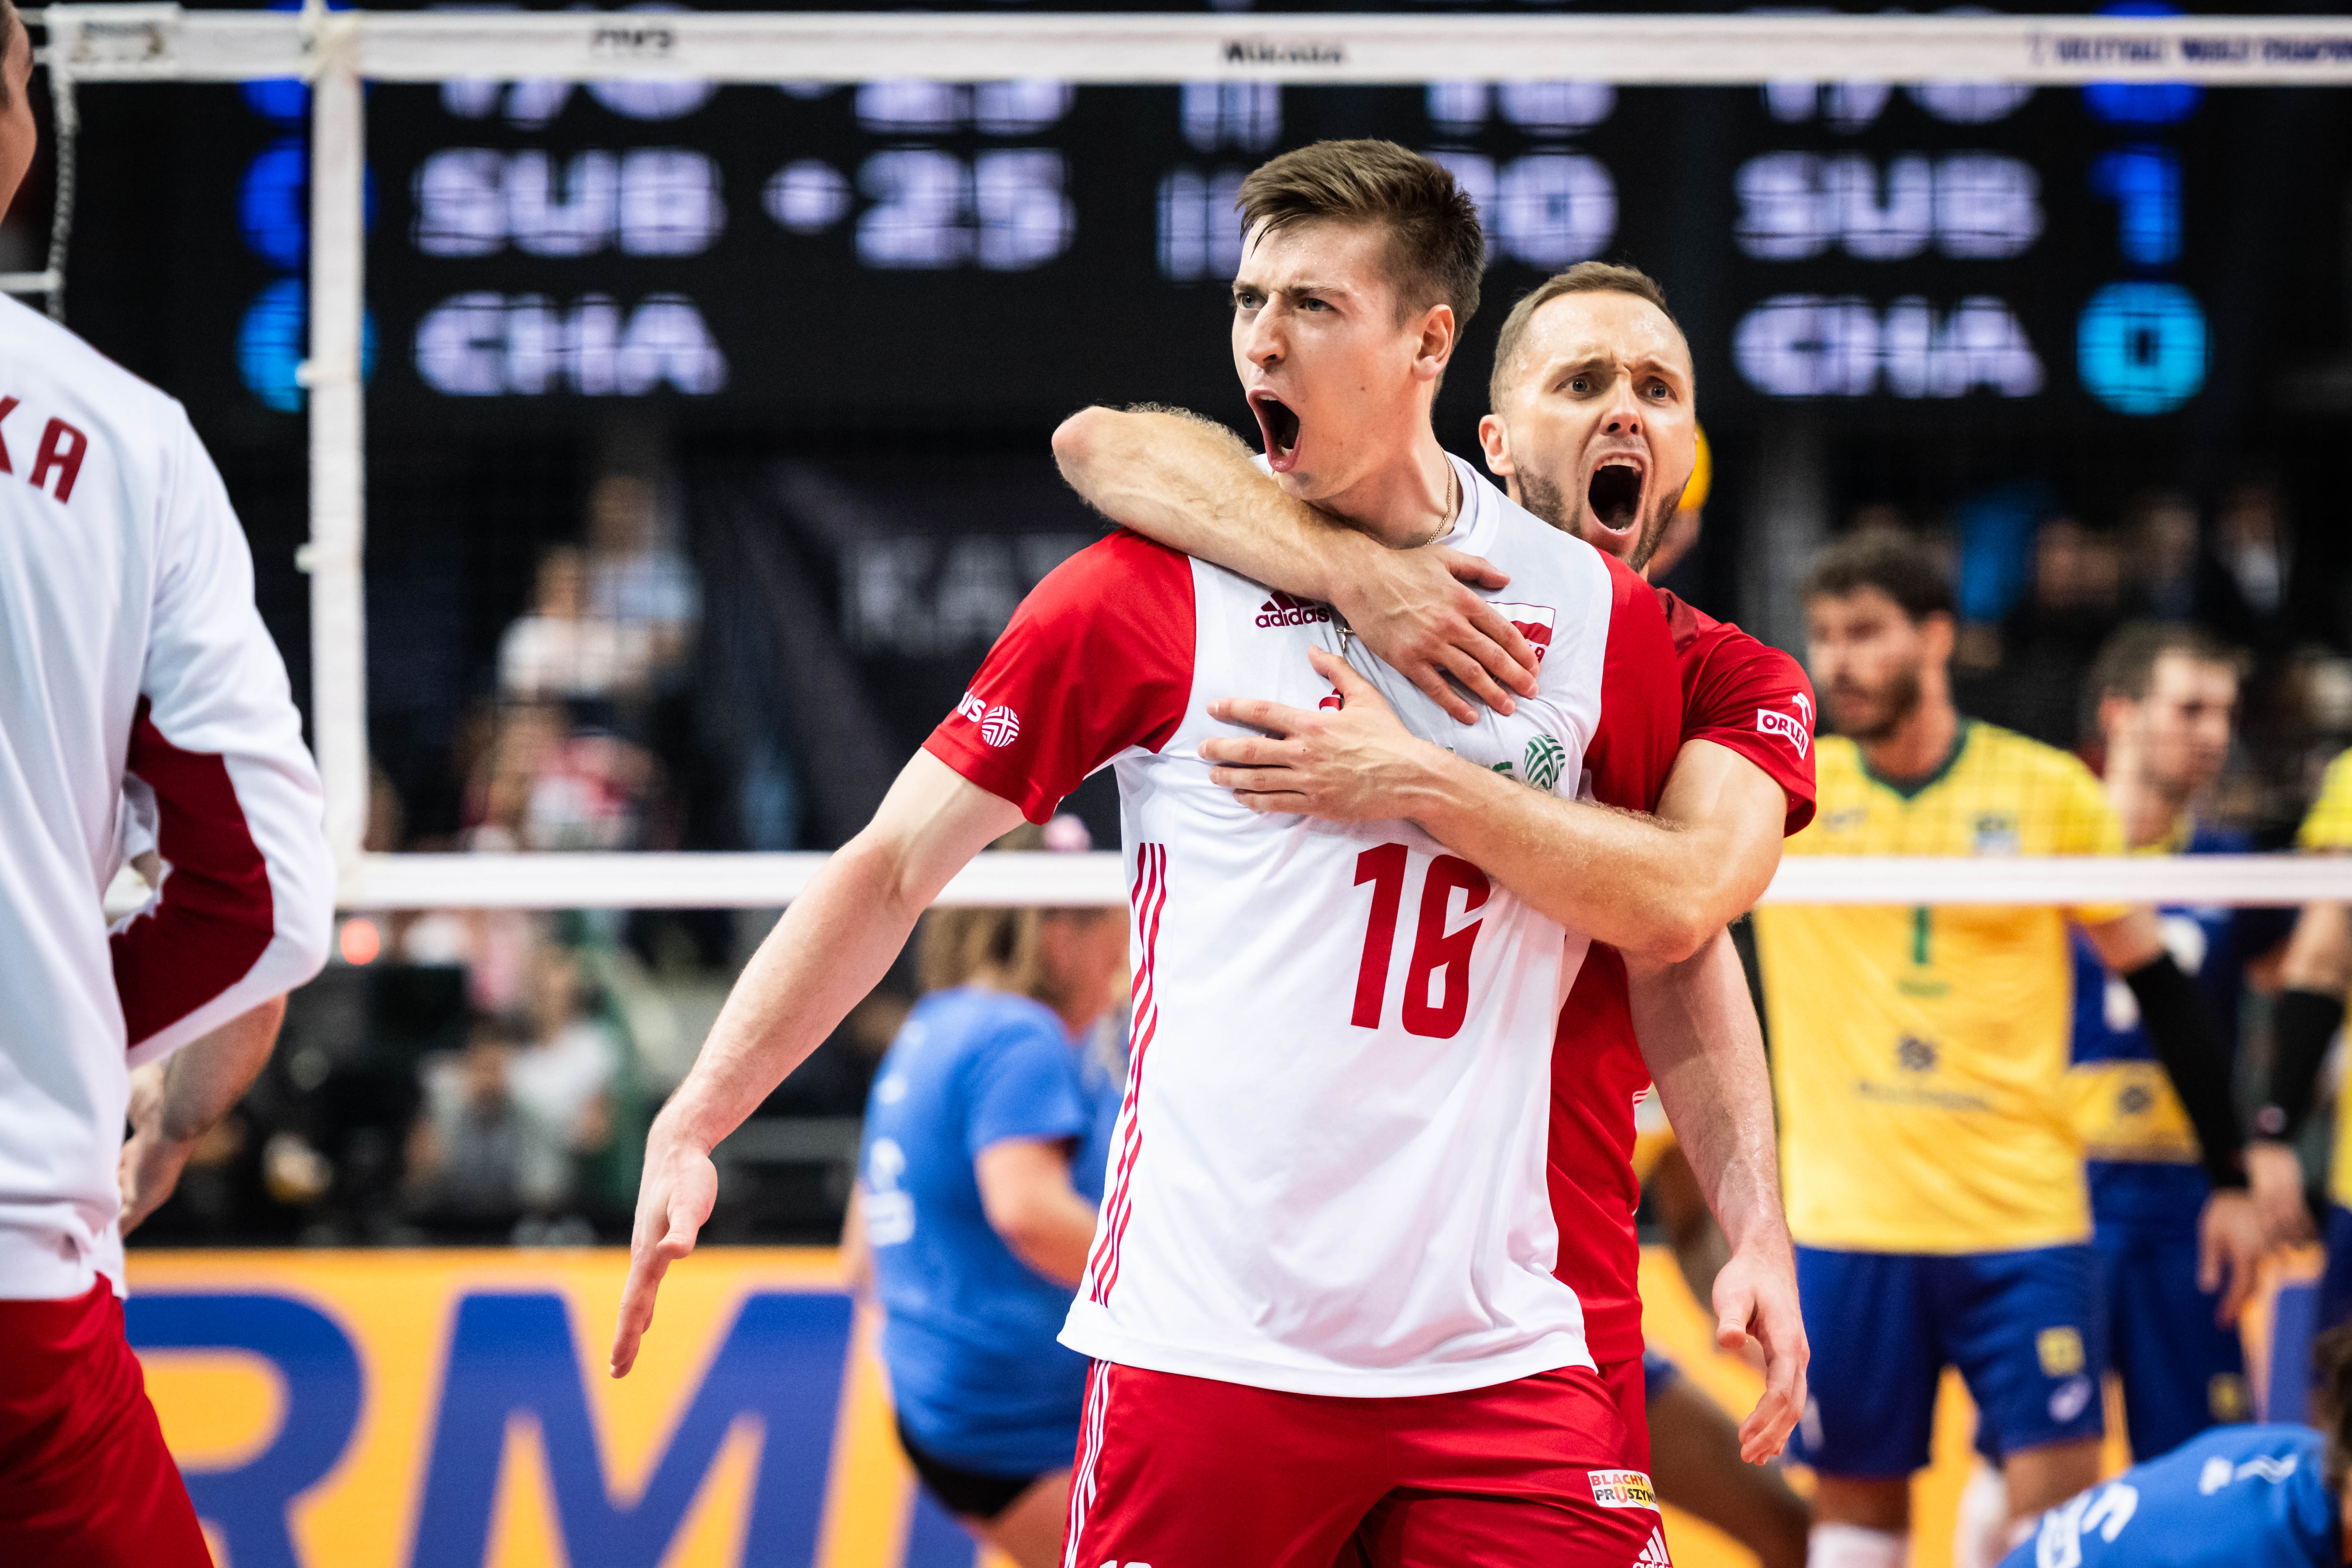 KATOWICE, POLAND - Poland Vs Mexico At Volleyball World